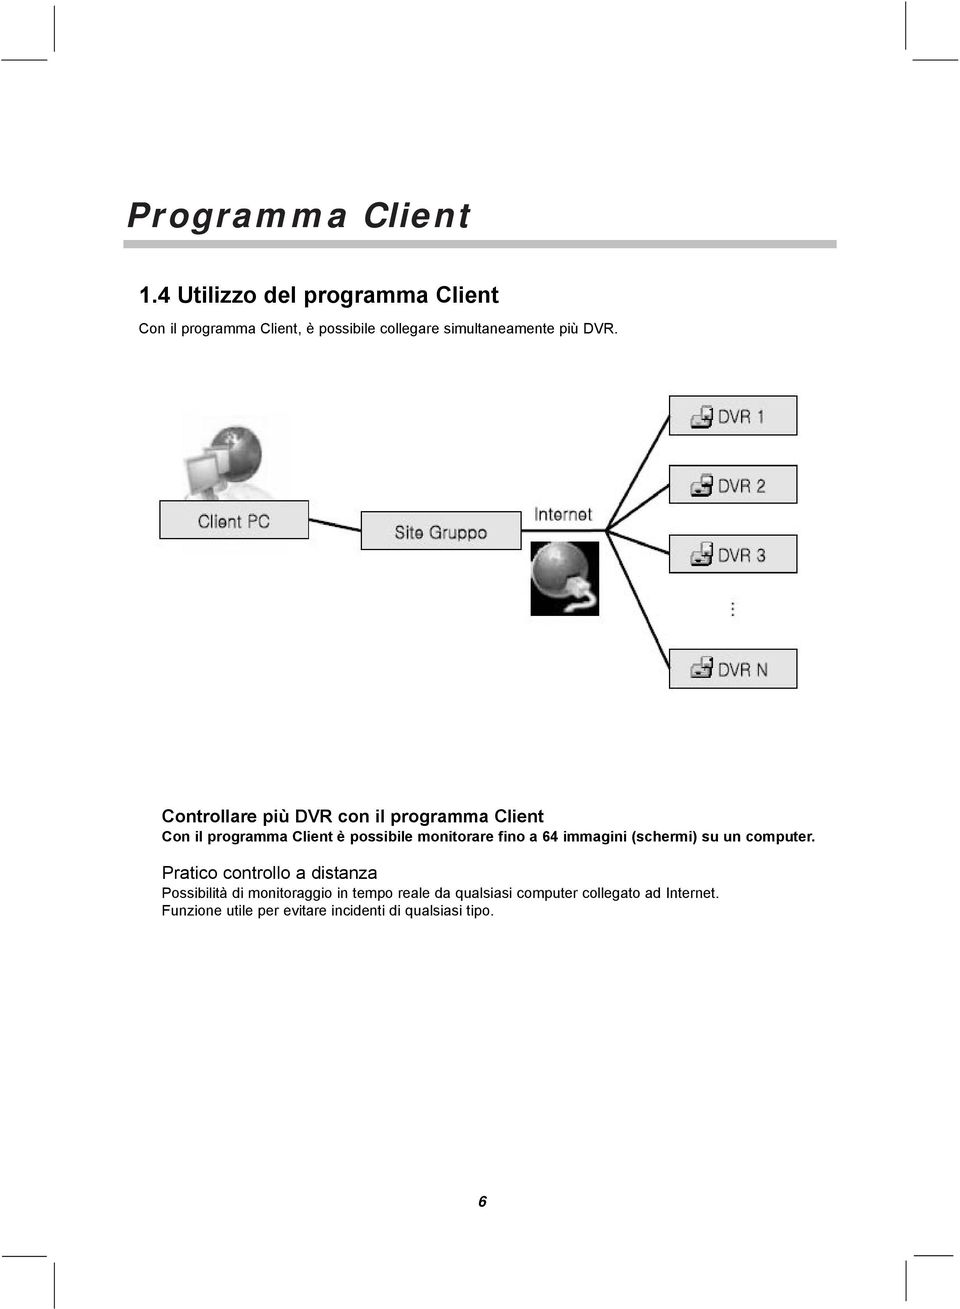 Controllare più DVR con il programma Client Con il programma Client è possibile monitorare fino a 64